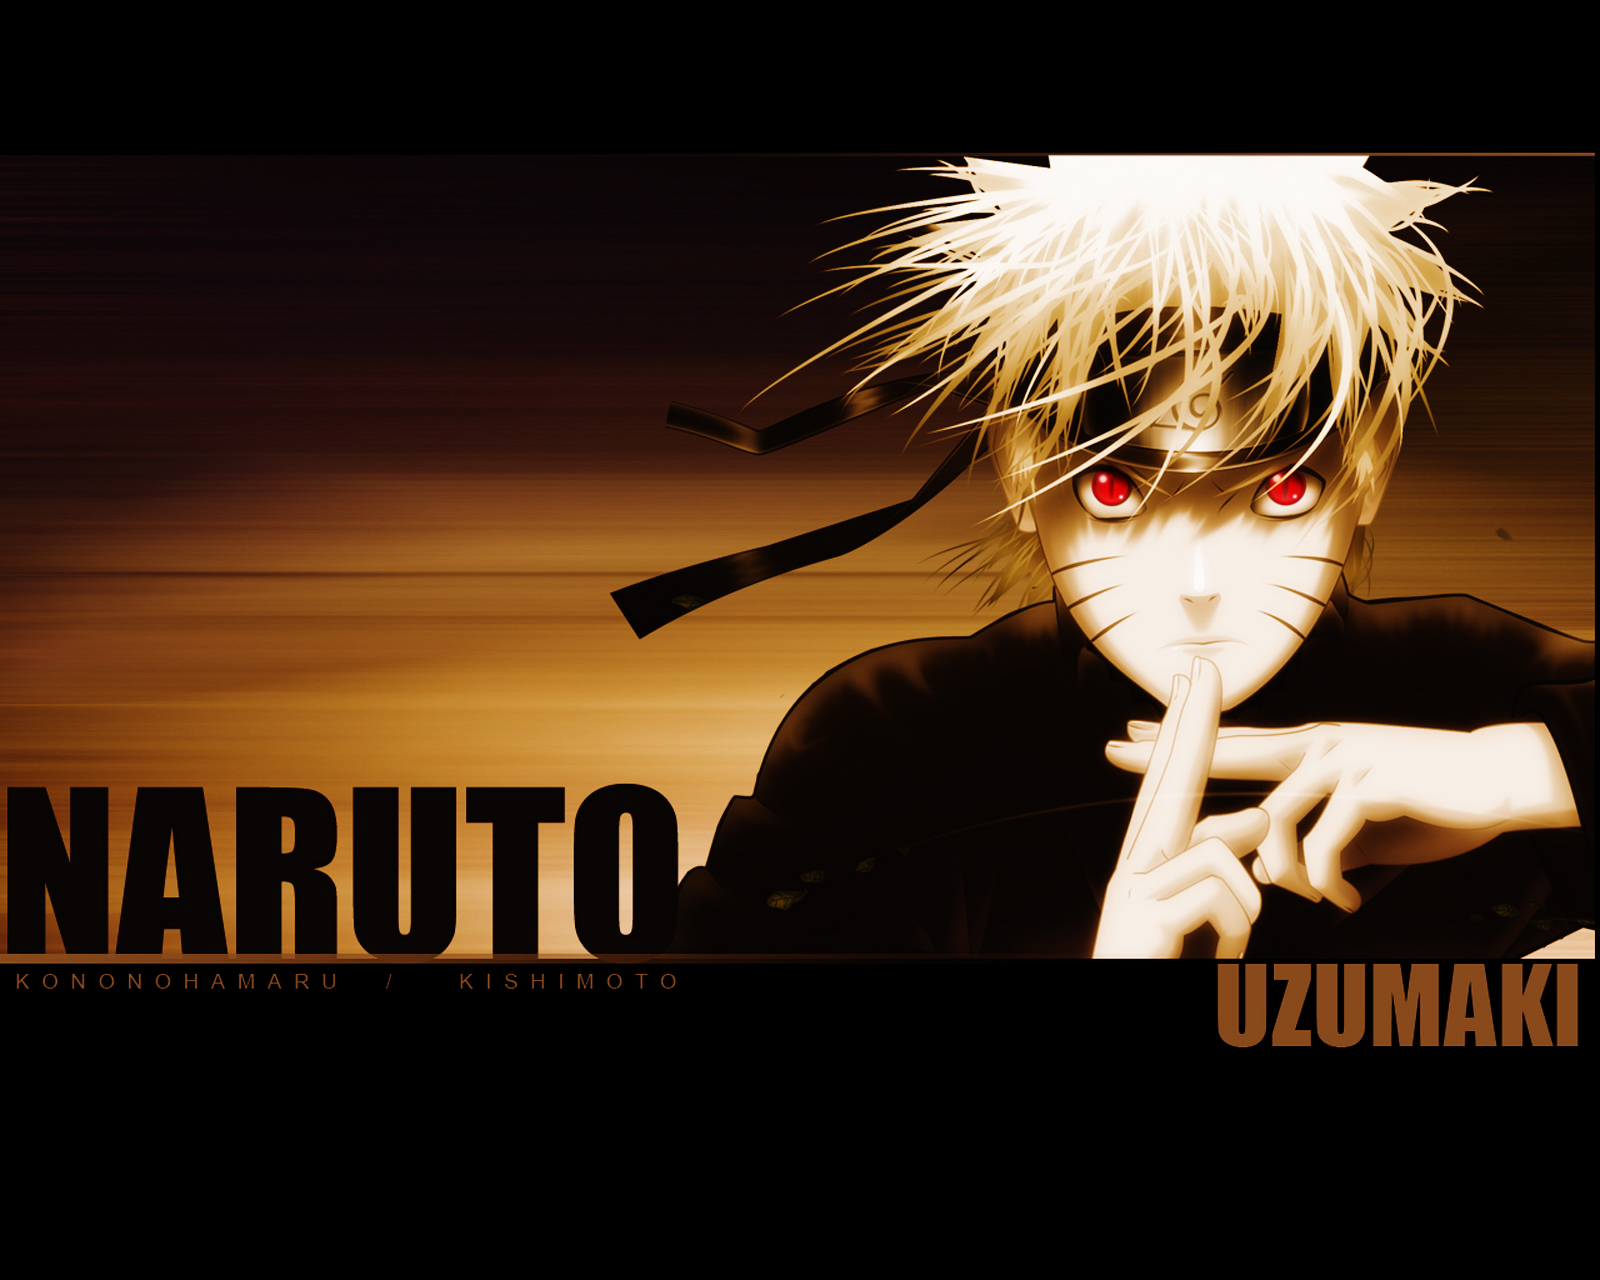 Naruto Uzumaki Kagebushin Anime HD Wallpapers Free Download ...